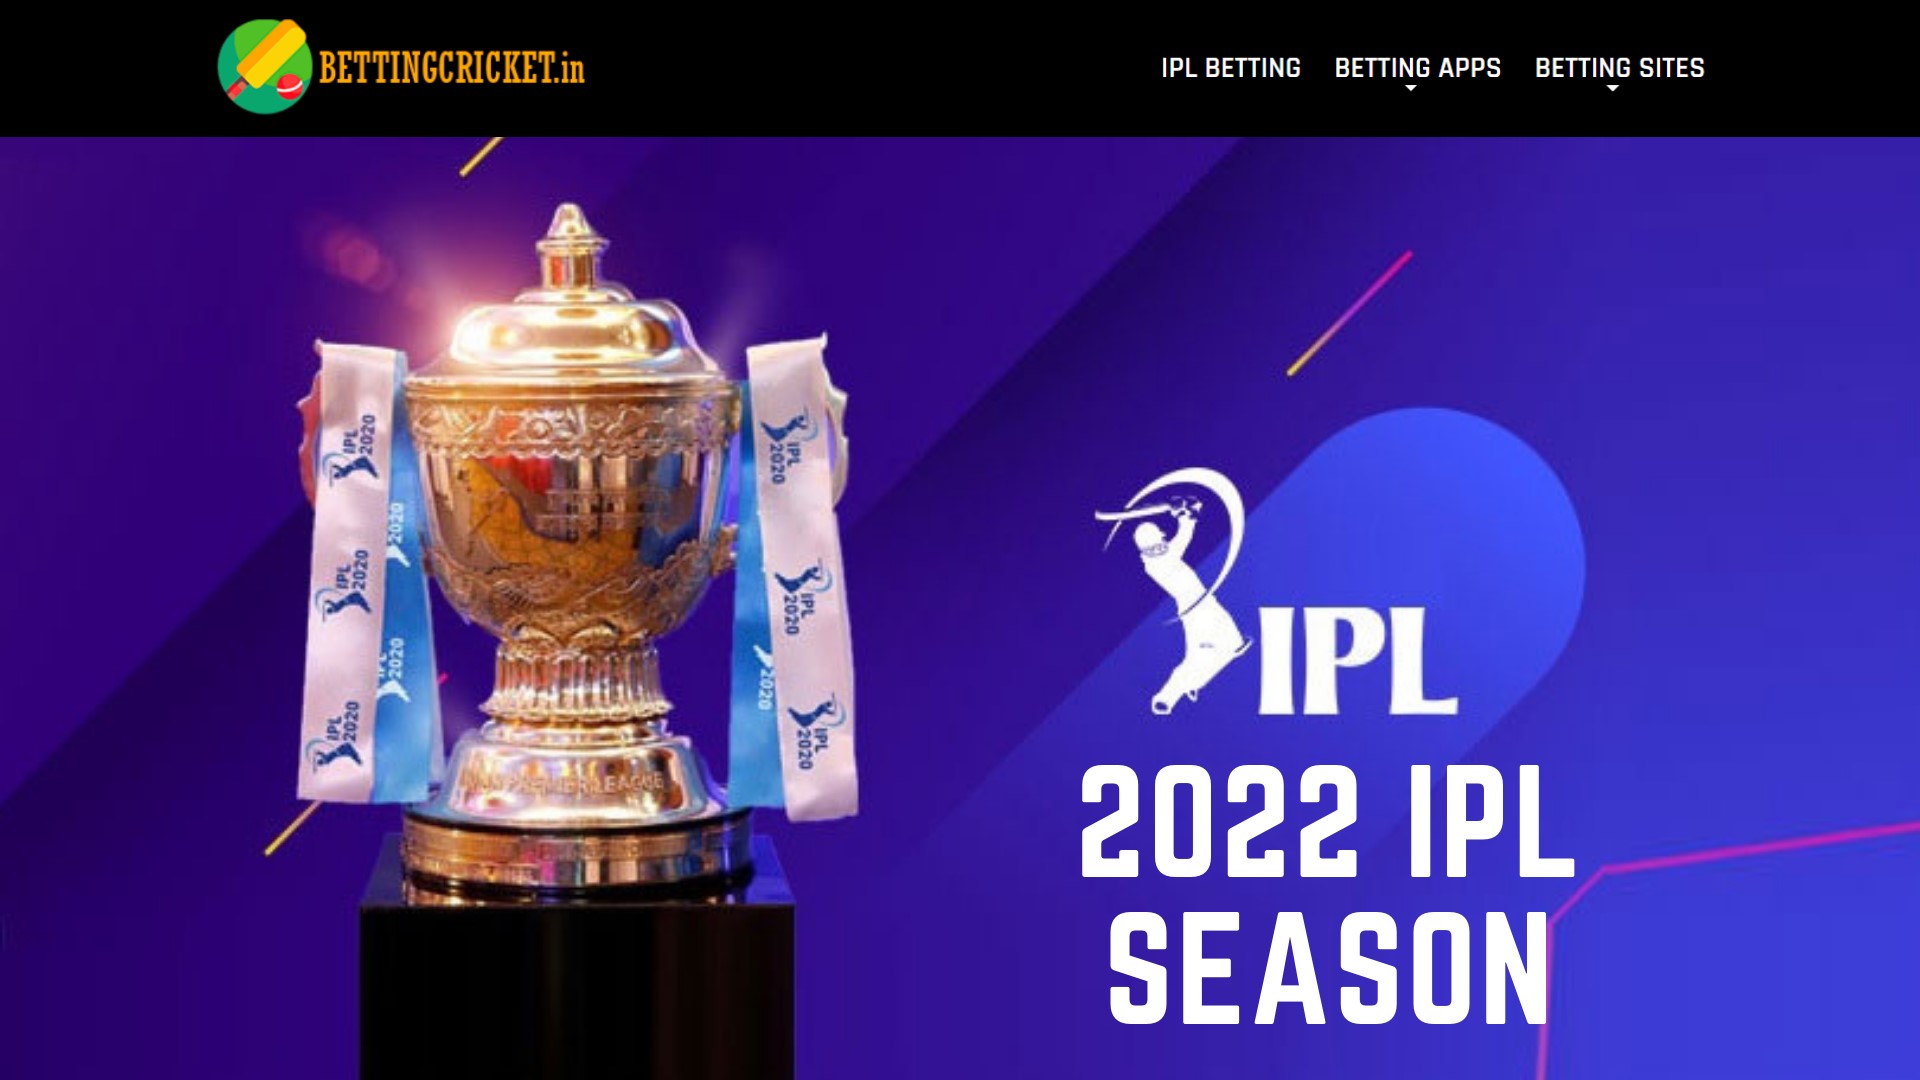 The 2022 IPL Season